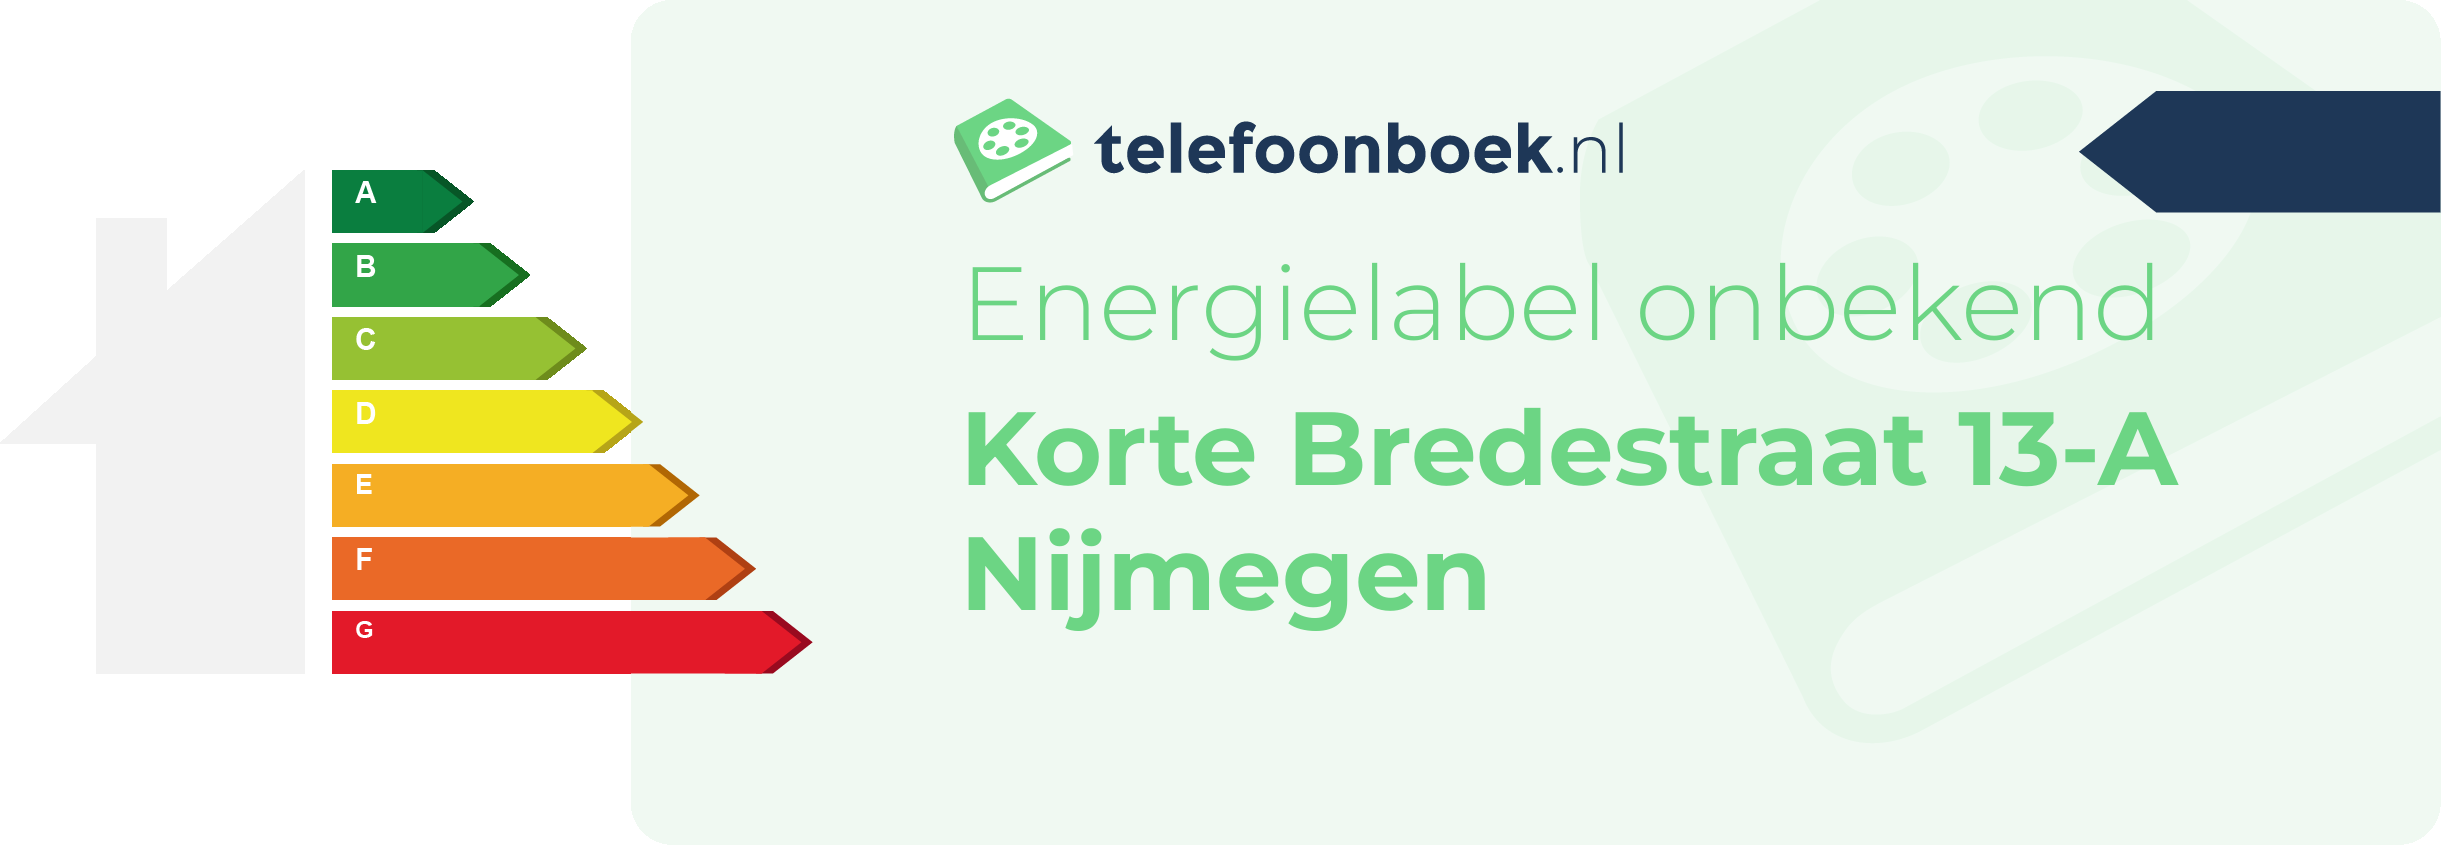 Energielabel Korte Bredestraat 13-A Nijmegen